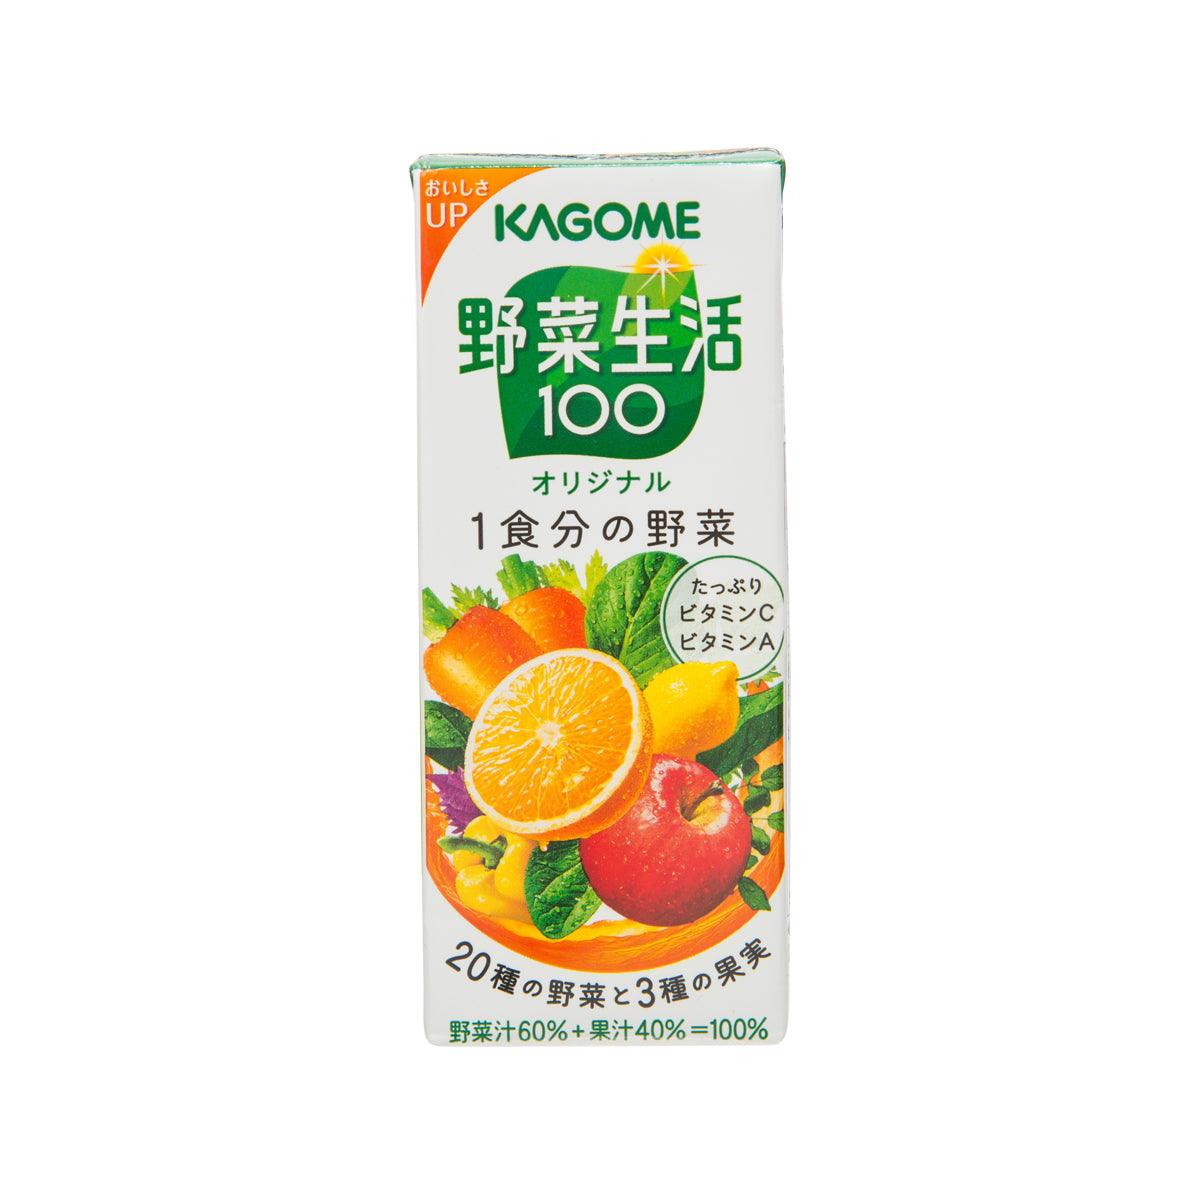 Kagome Yasai Seikatsu Original Mixed Vegetable And Fruit Juice 200ml 5954